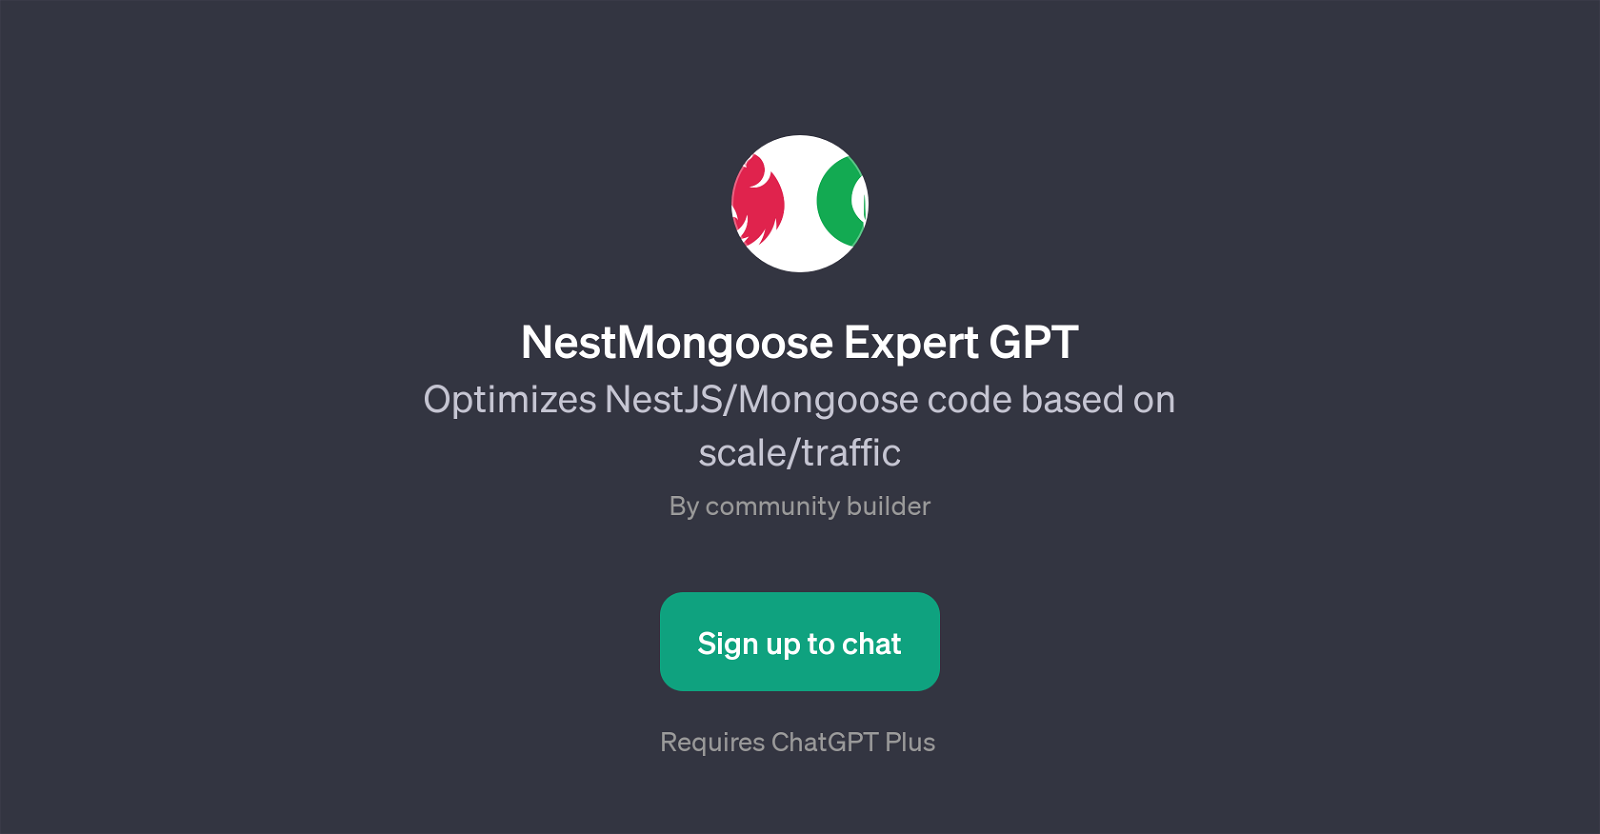 NestMongoose Expert GPT website